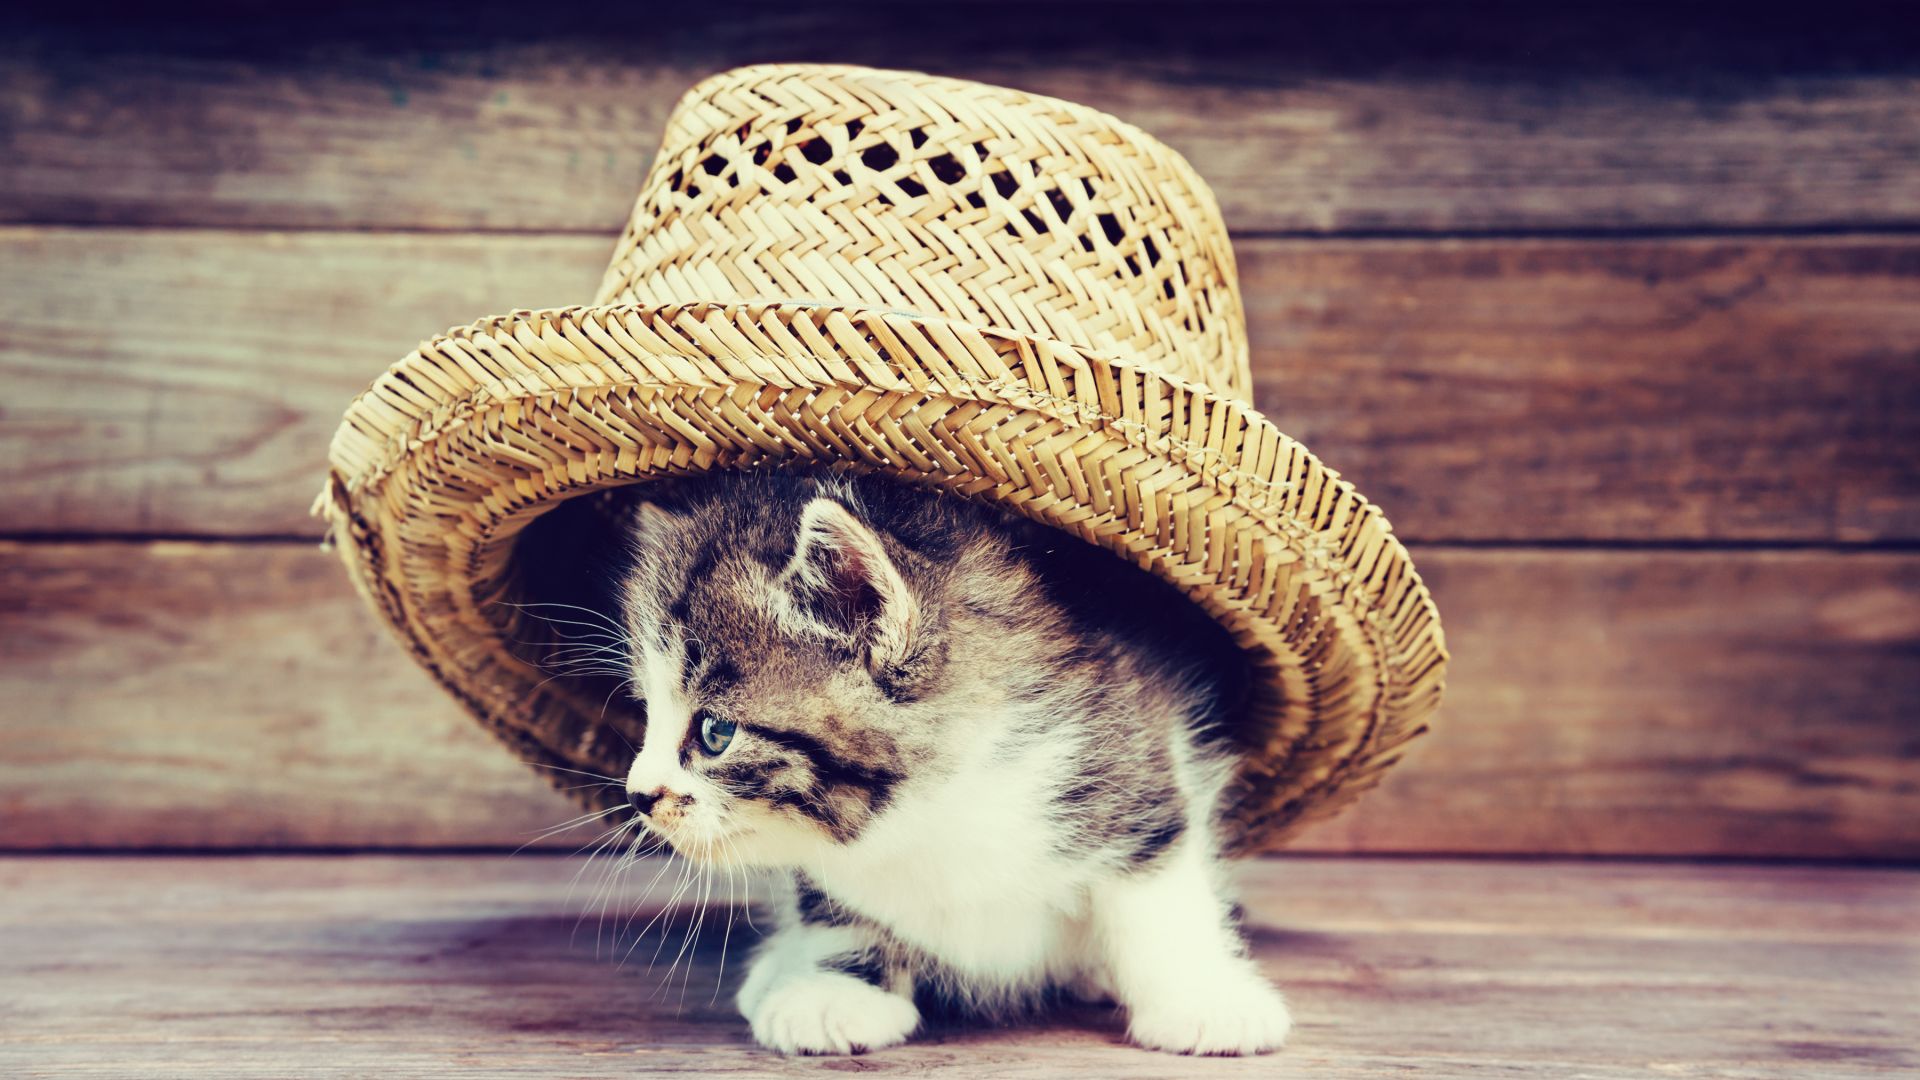 Wallpaper Kitten, baby cat hidden in hat